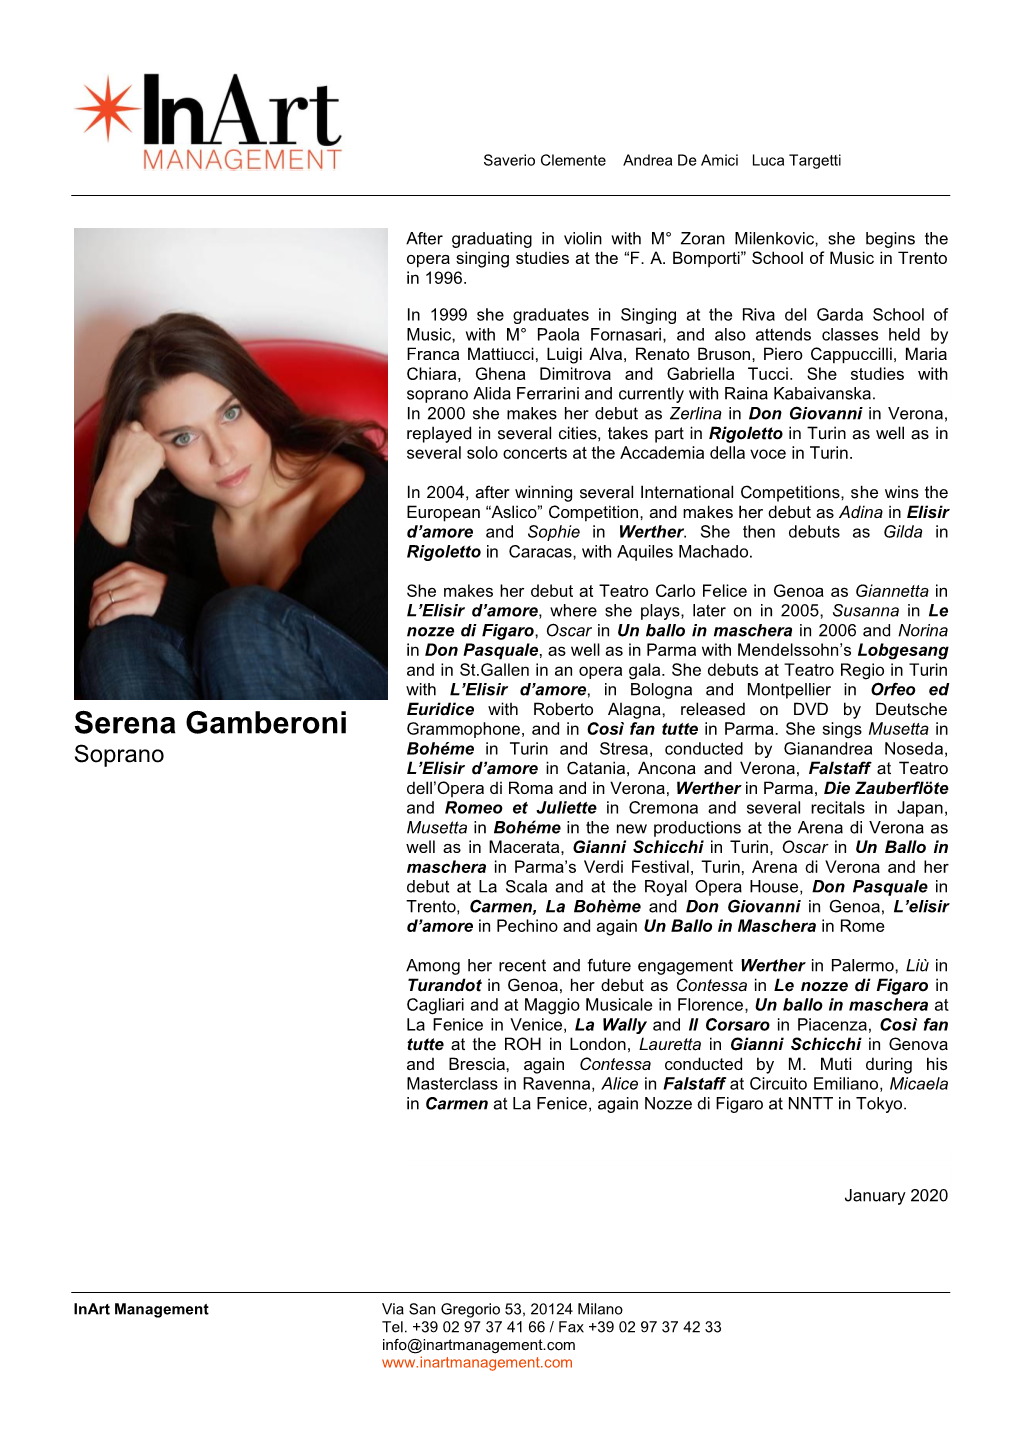 Serena Gamberoni Grammophone, and in Così Fan Tutte in Parma